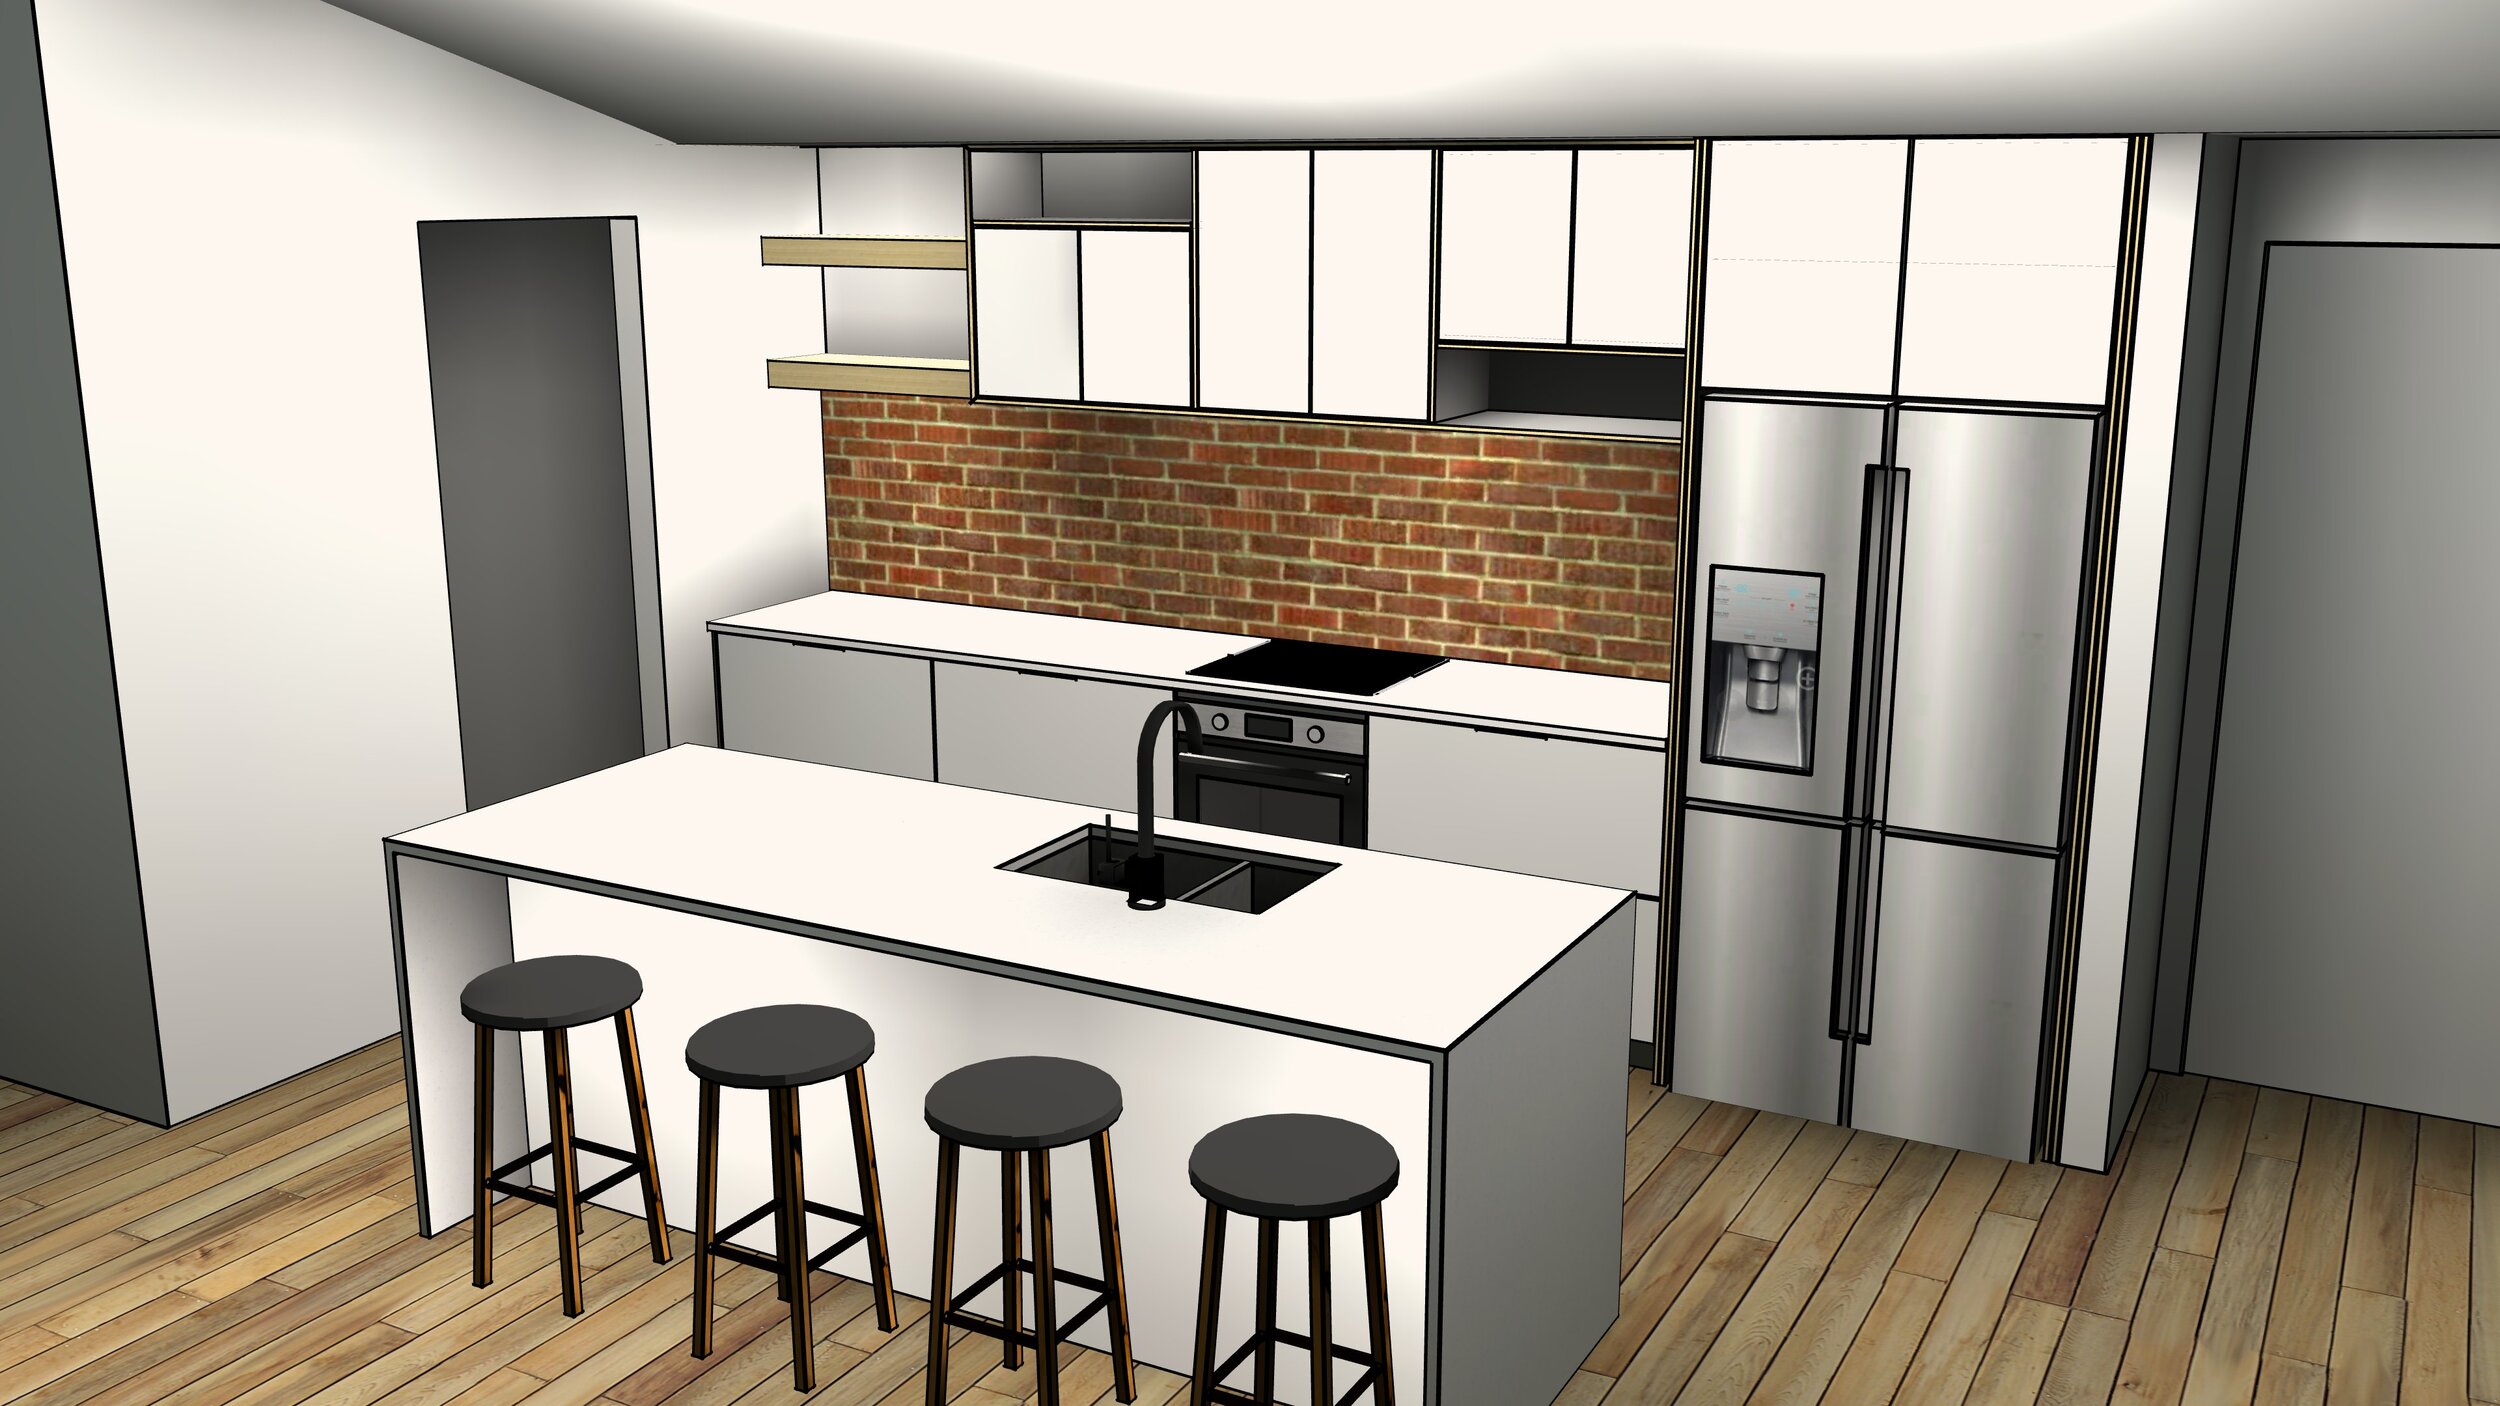 main kitchen render 1.jpg